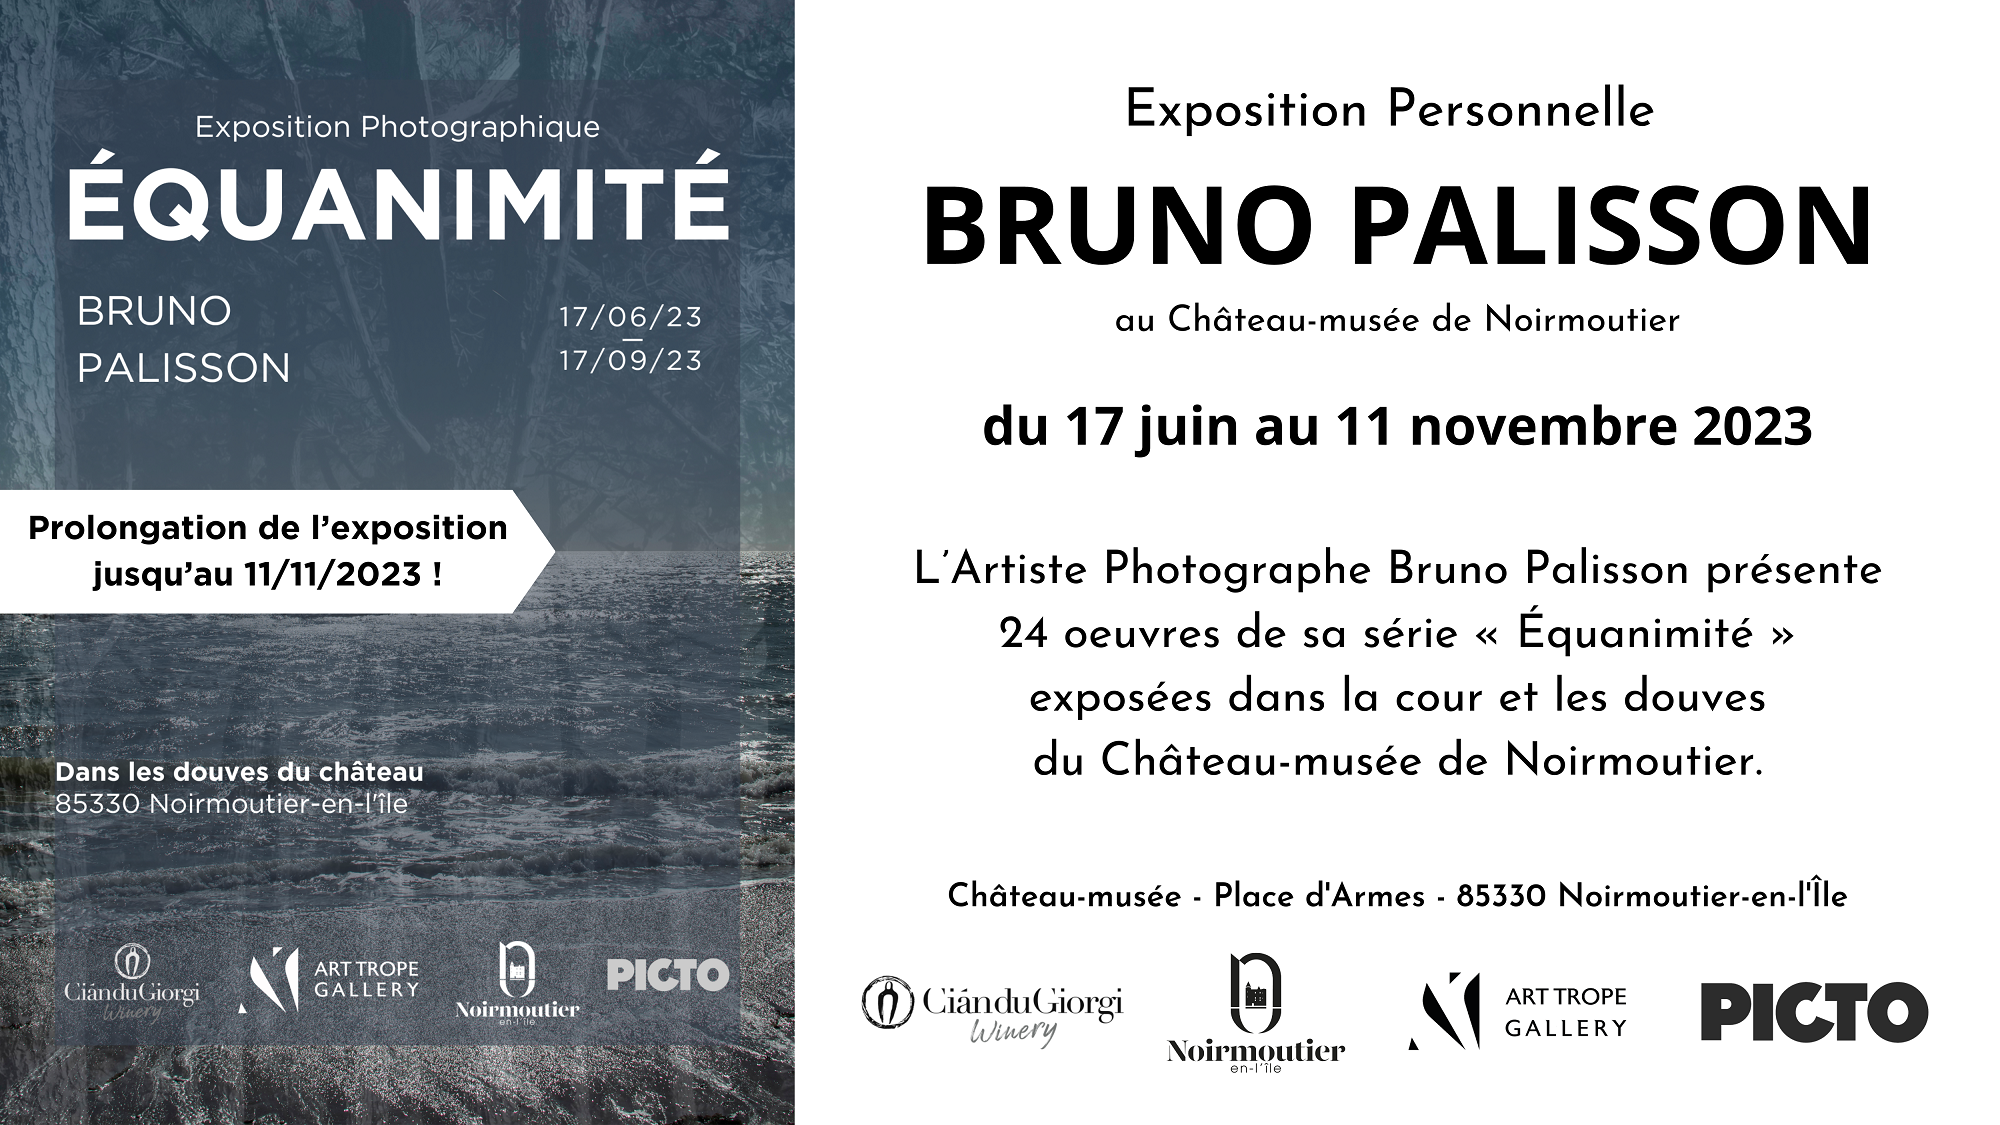 Exposition Personnelle - Bruno Palisson - "EQUANIMITE" - Château-musée de Noirmoutier - France